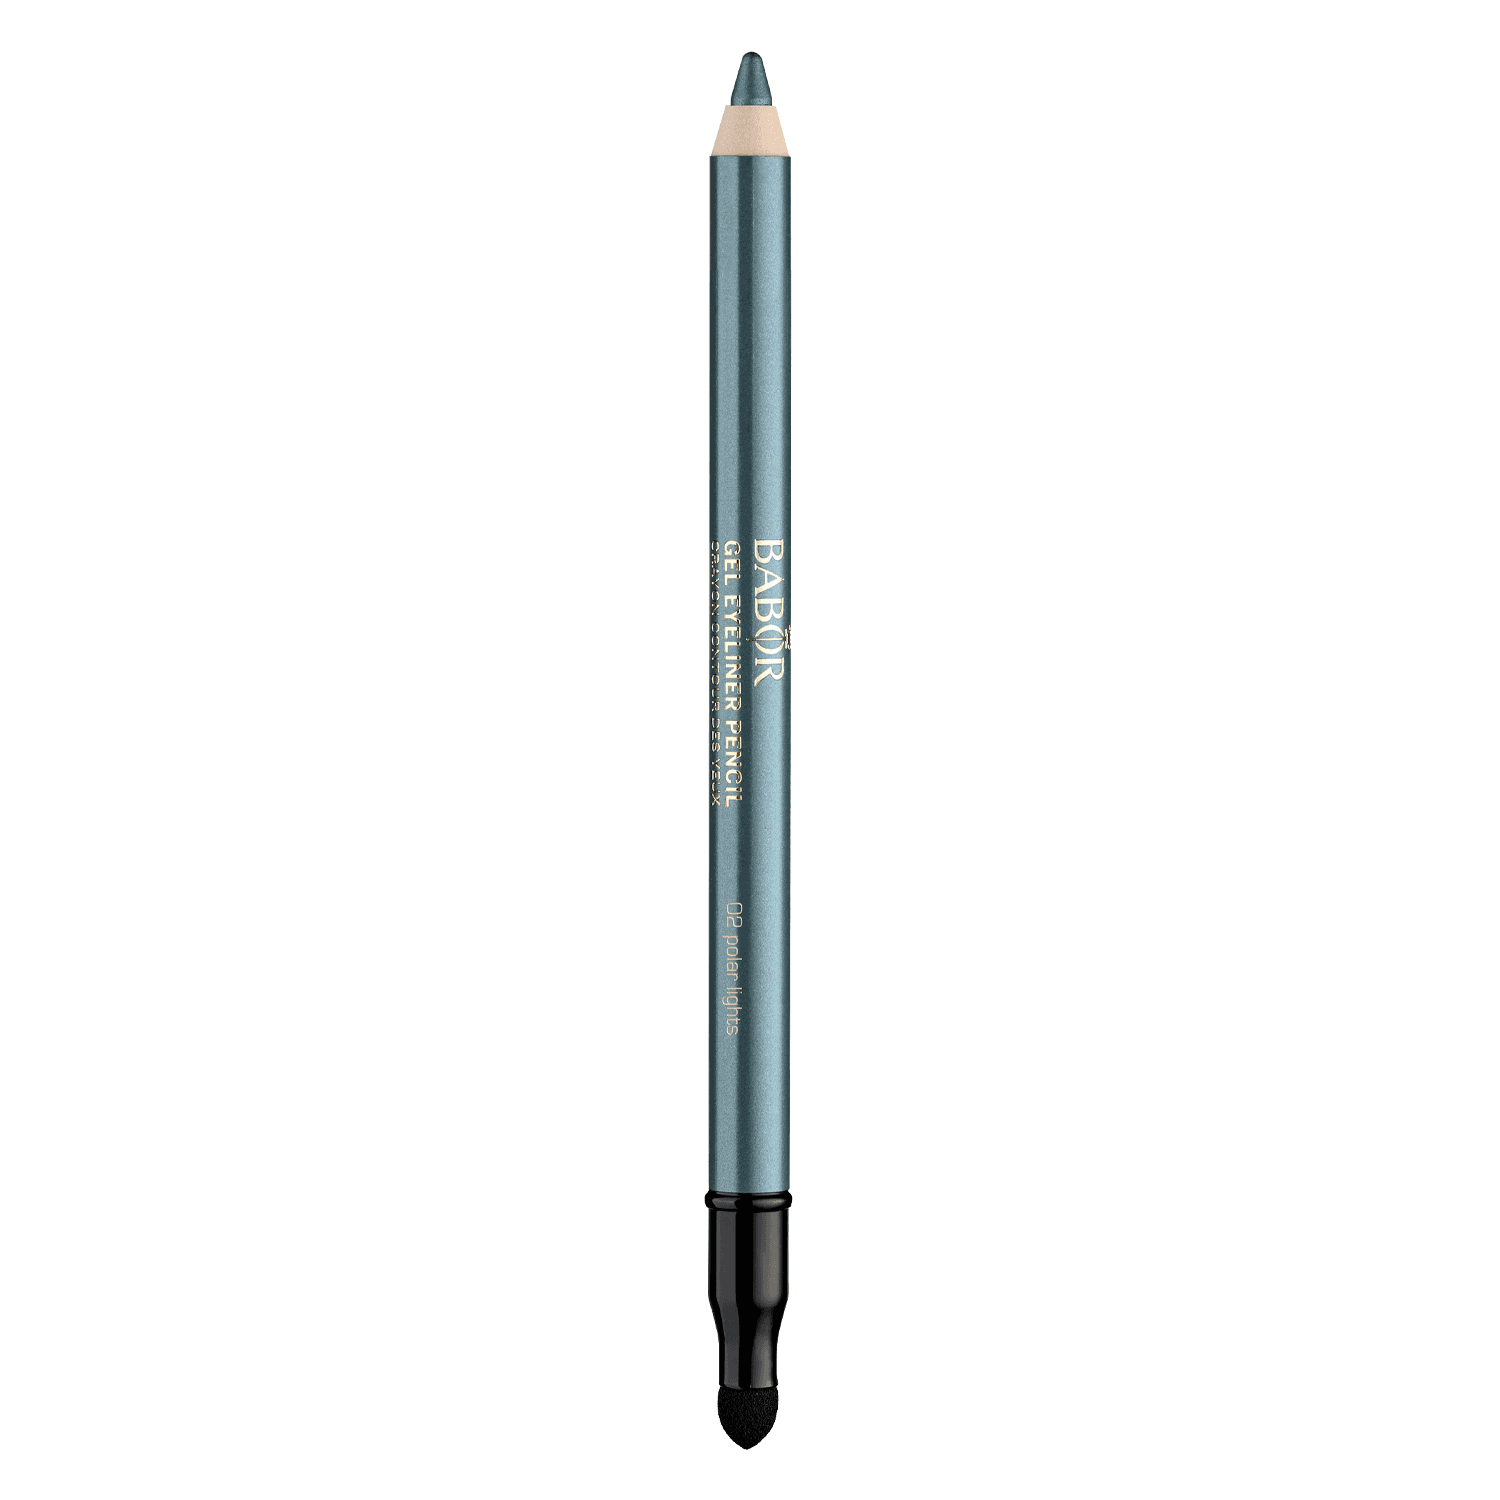 BABOR MAKE UP - Gel Eyeliner Pencil 02 Polar Lights